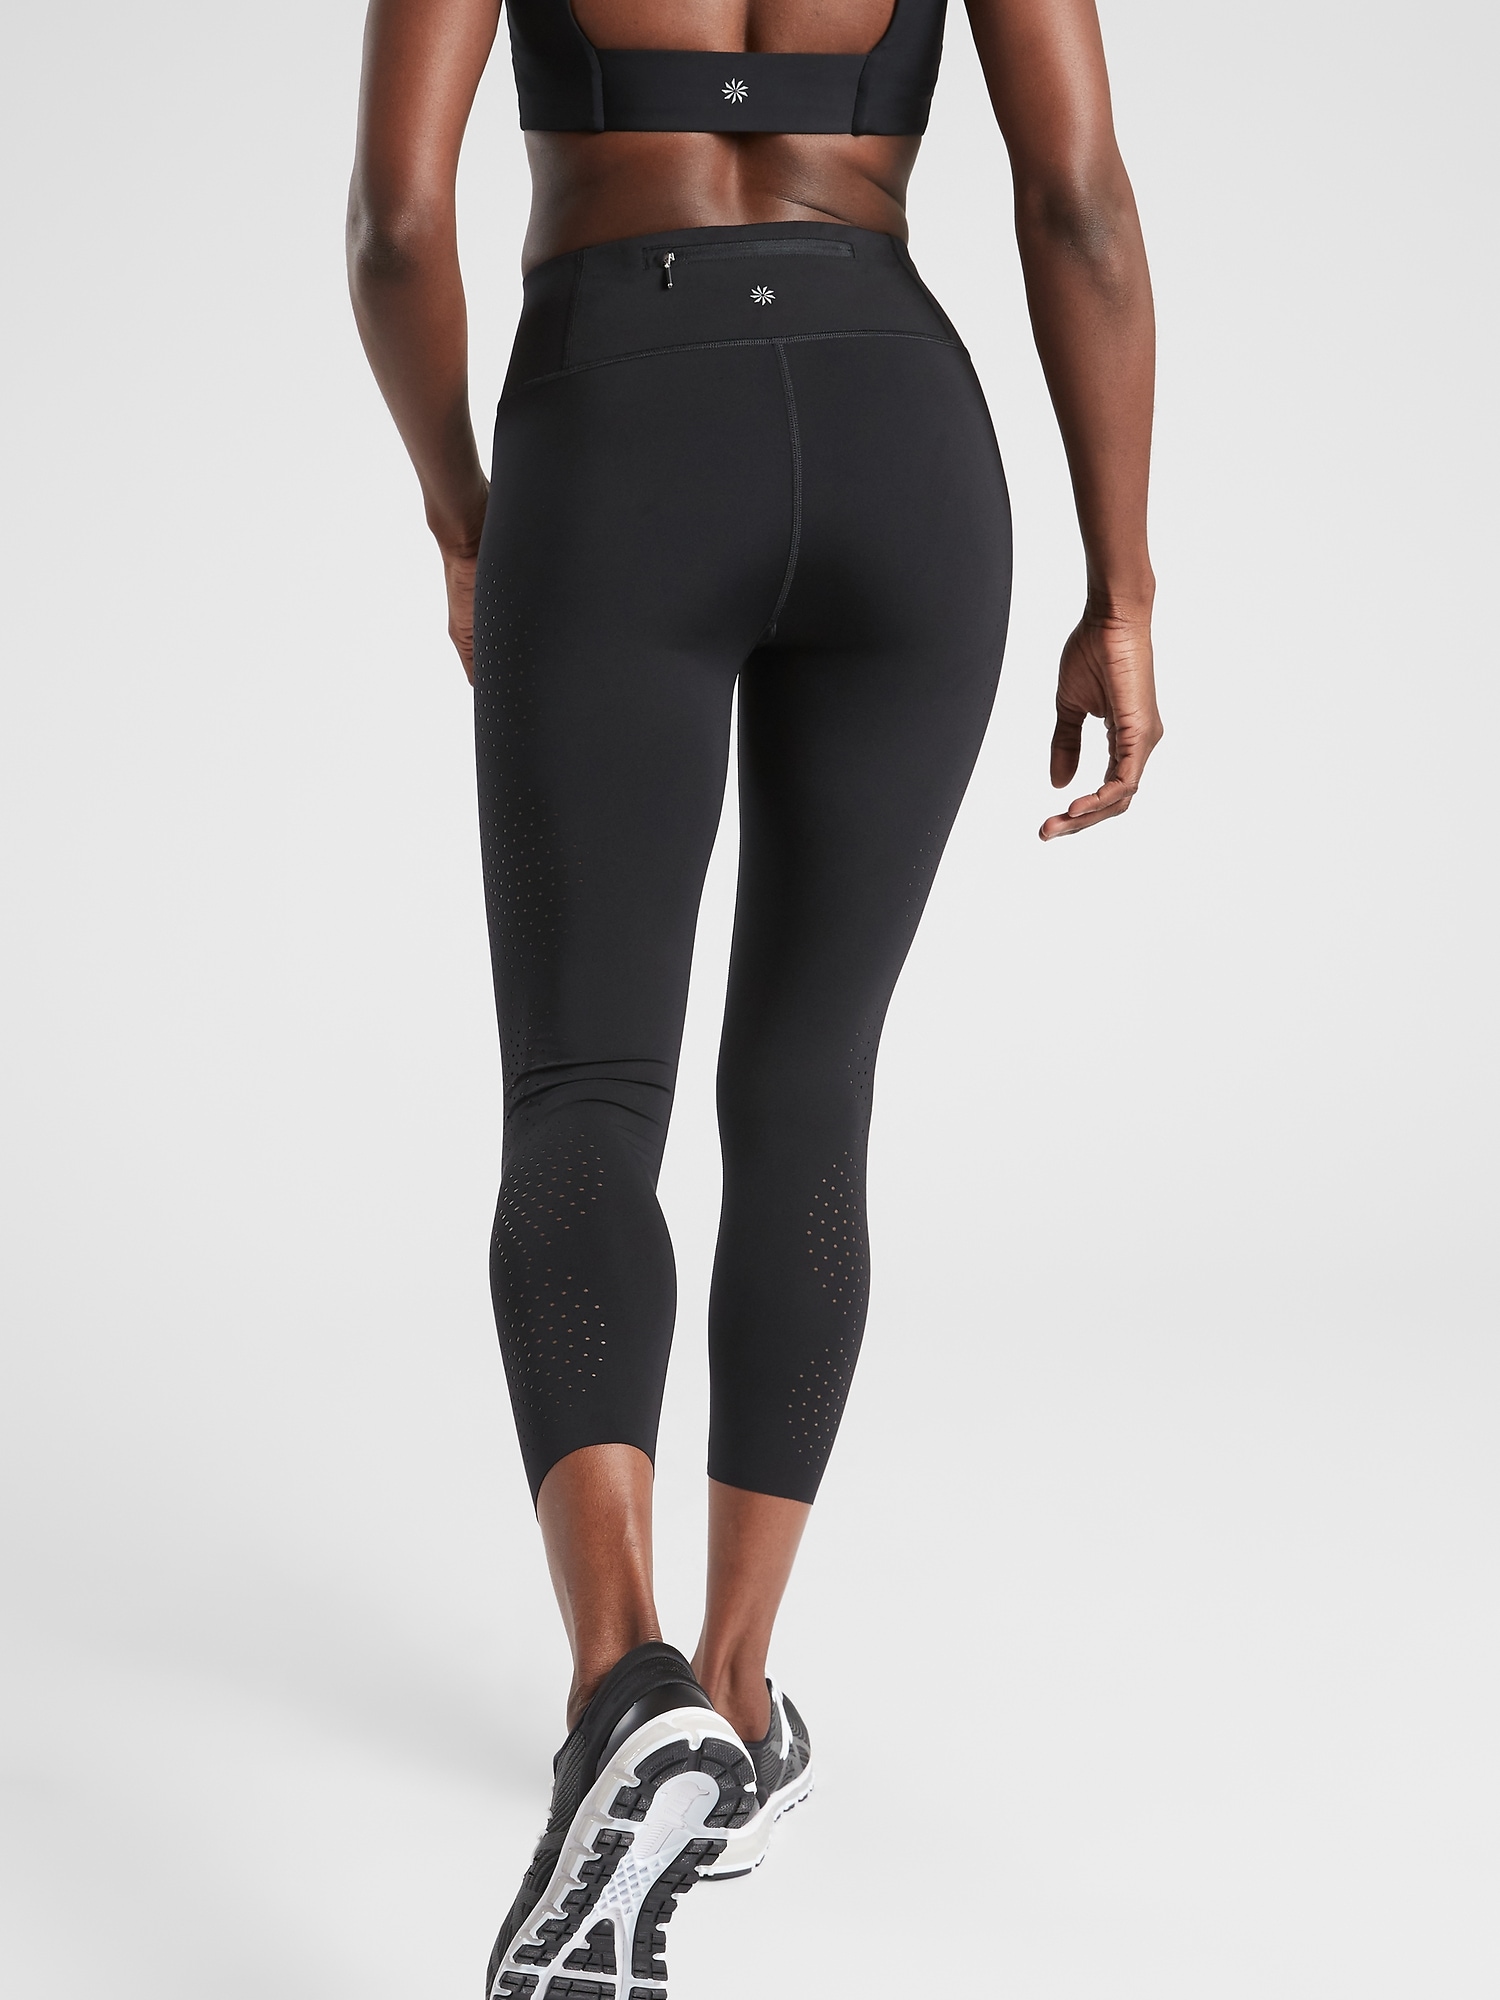 Athleta Black Velocity Laser Cut Capri Leggings Size XS petite - $28 (71%  Off Retail) - From Alyssa